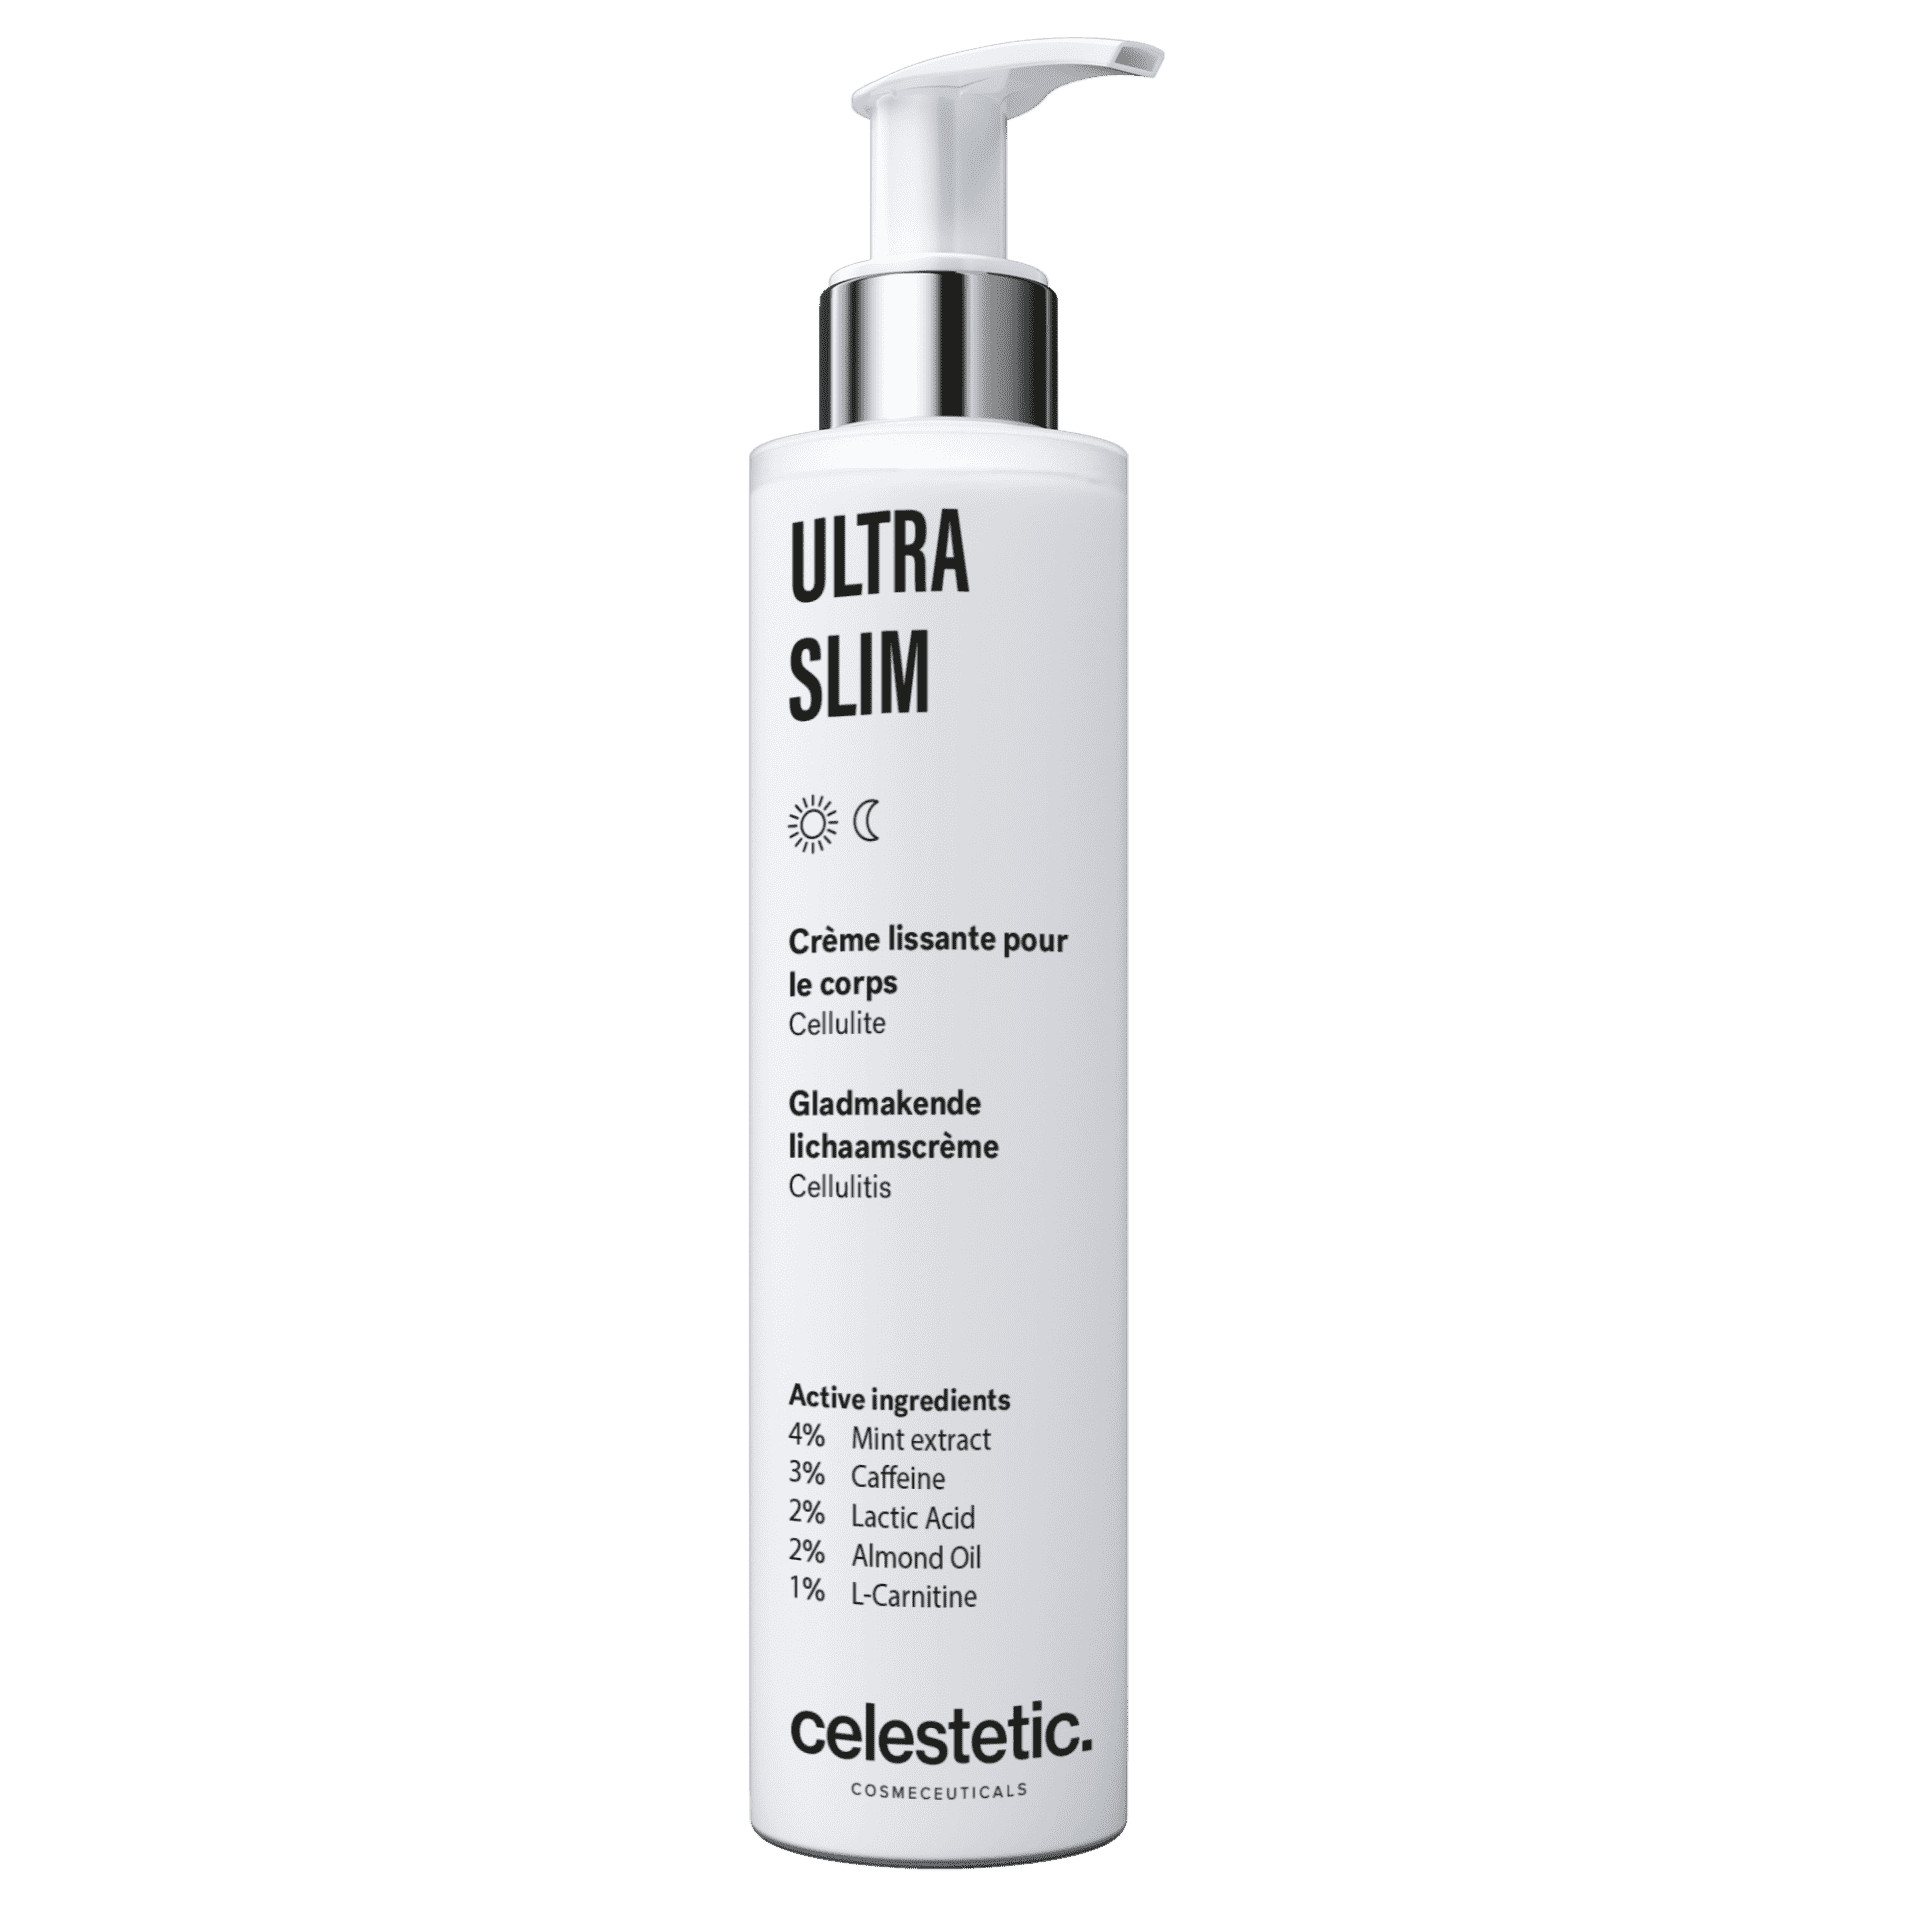 ULTRA SLIM 抗橙皮柔滑緊緻身體潤膚乳霜 - Derm-Mart